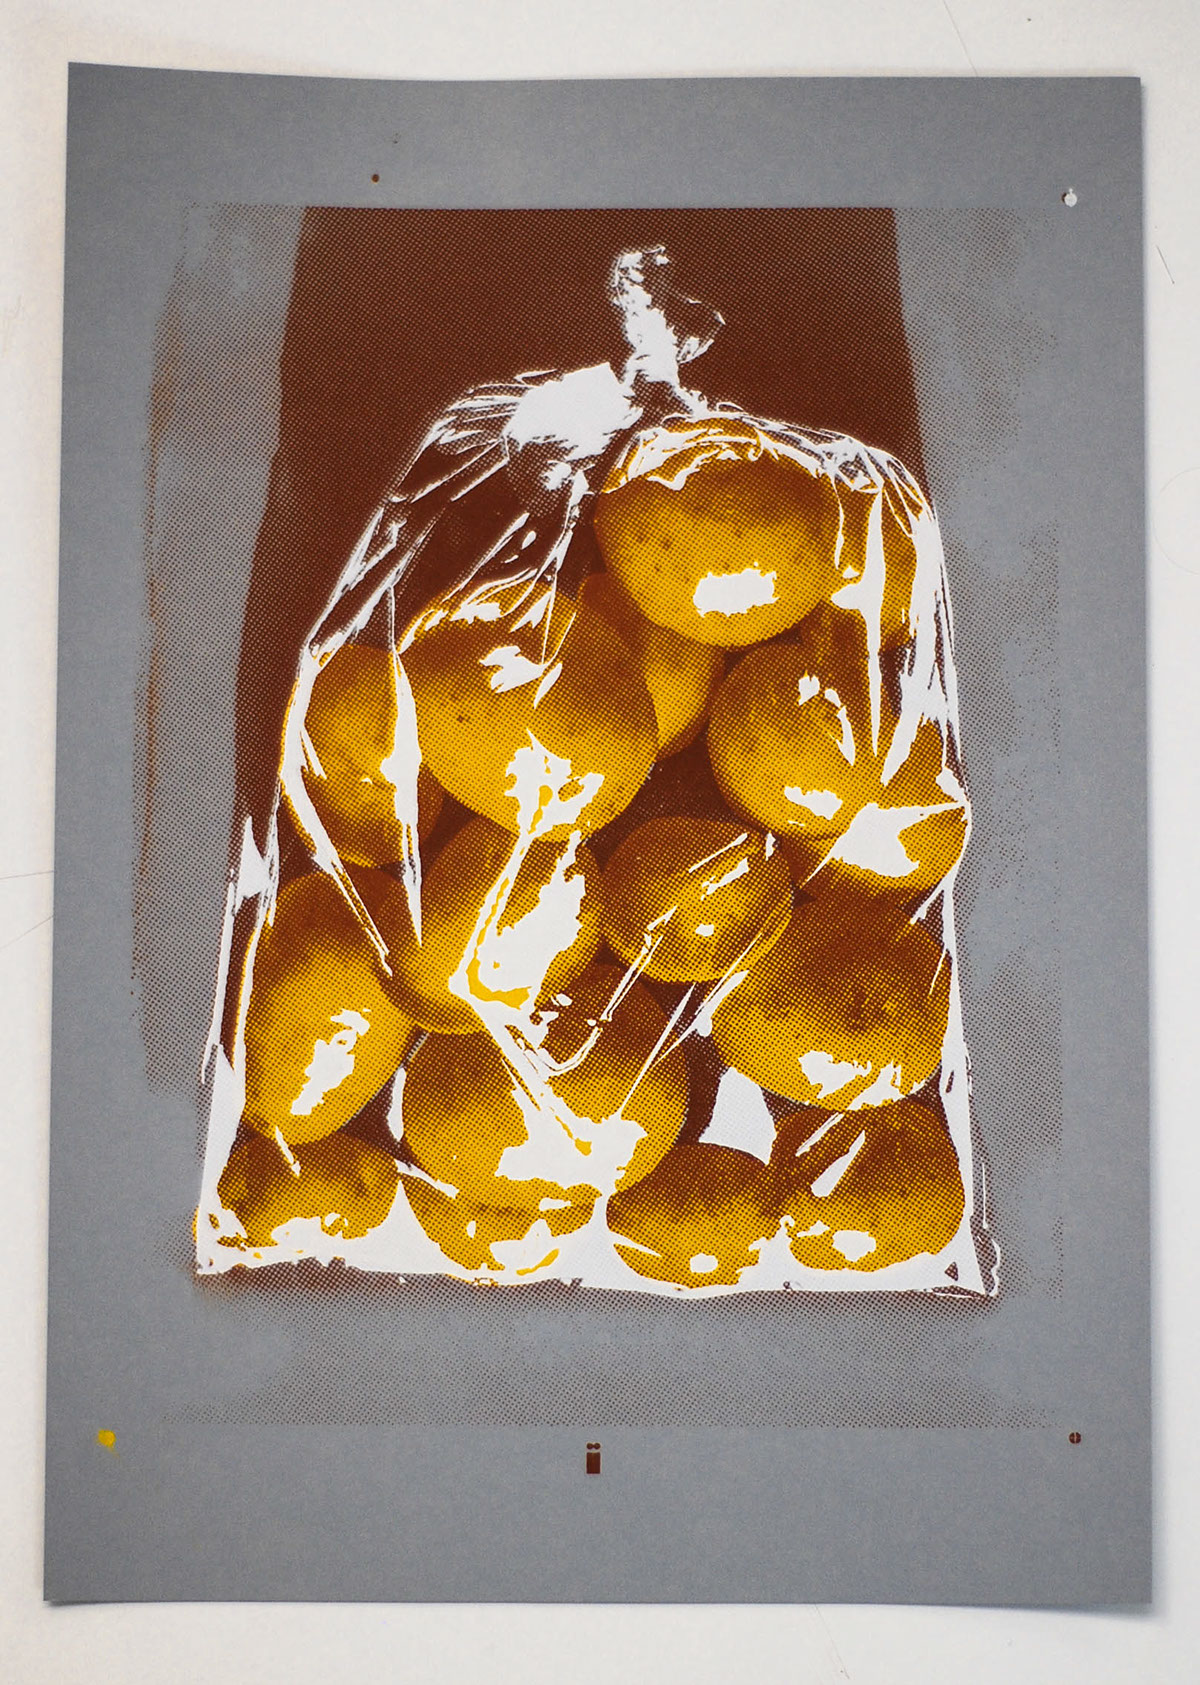 Serigraphy serigraph serigrafia silk-screen SILK potatoes reticule bag of potatos saco de batatas homem ou saco de batatas